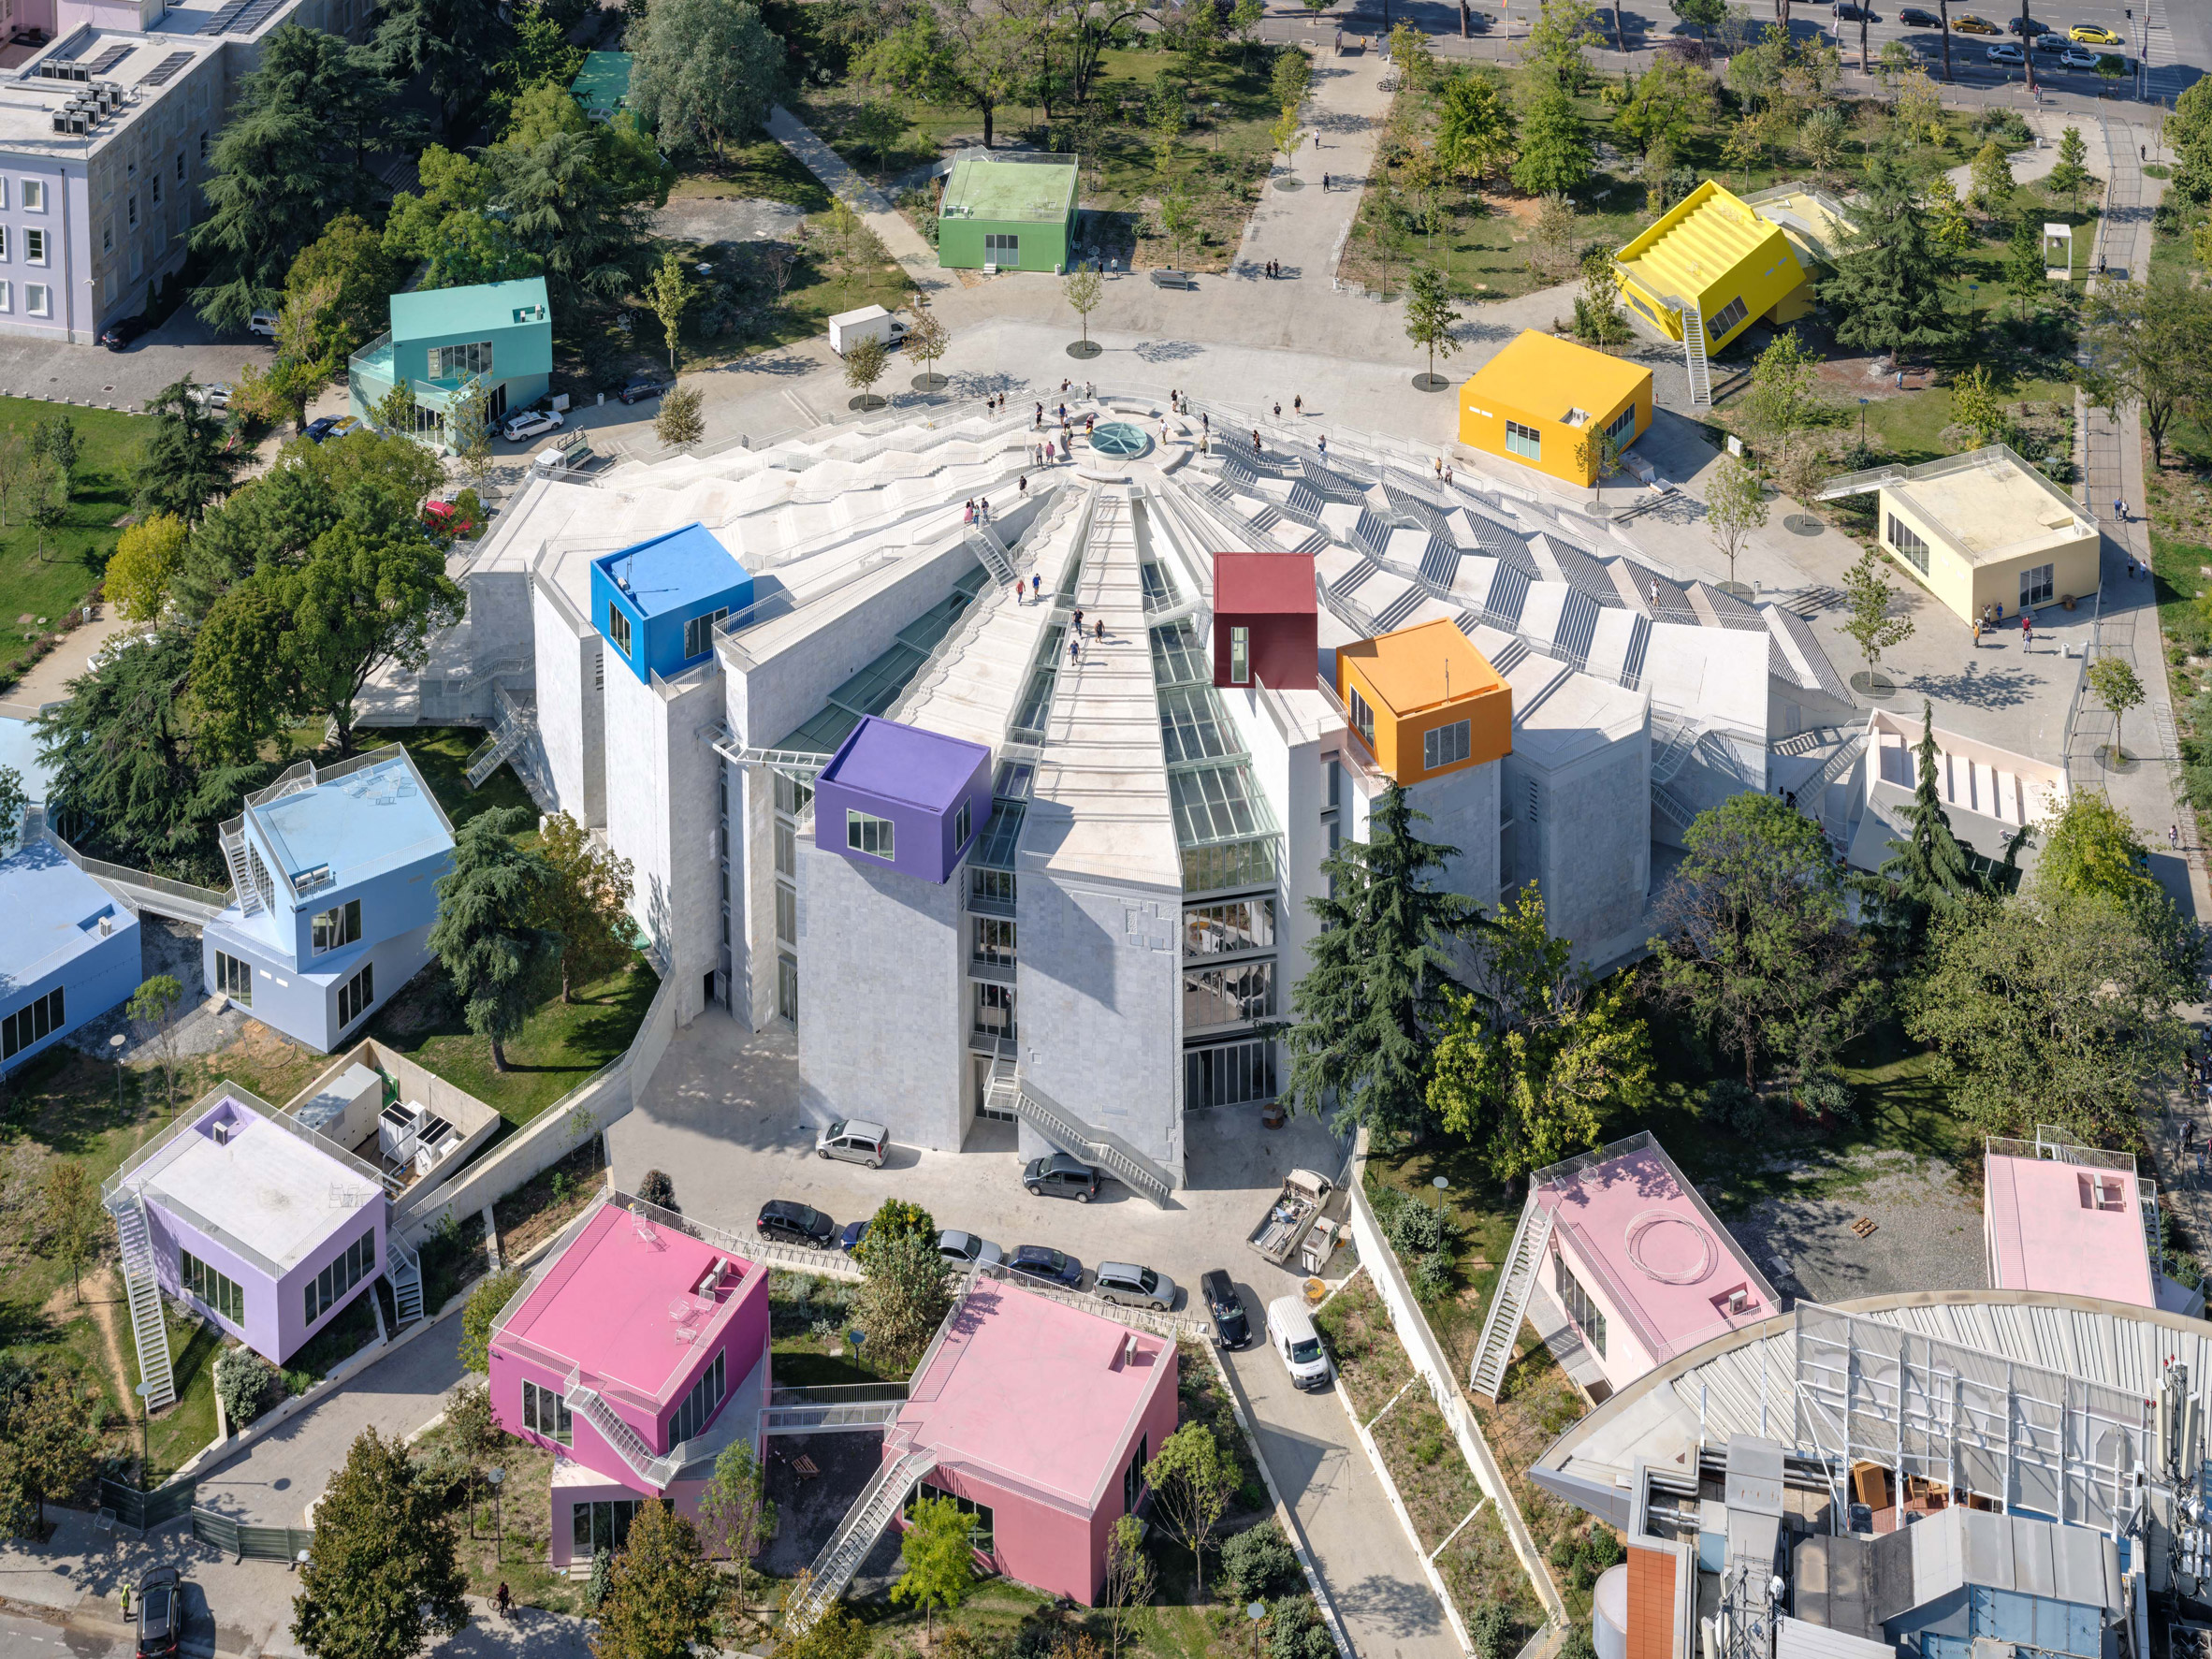 Coloured boxes on pyramid of Tirana